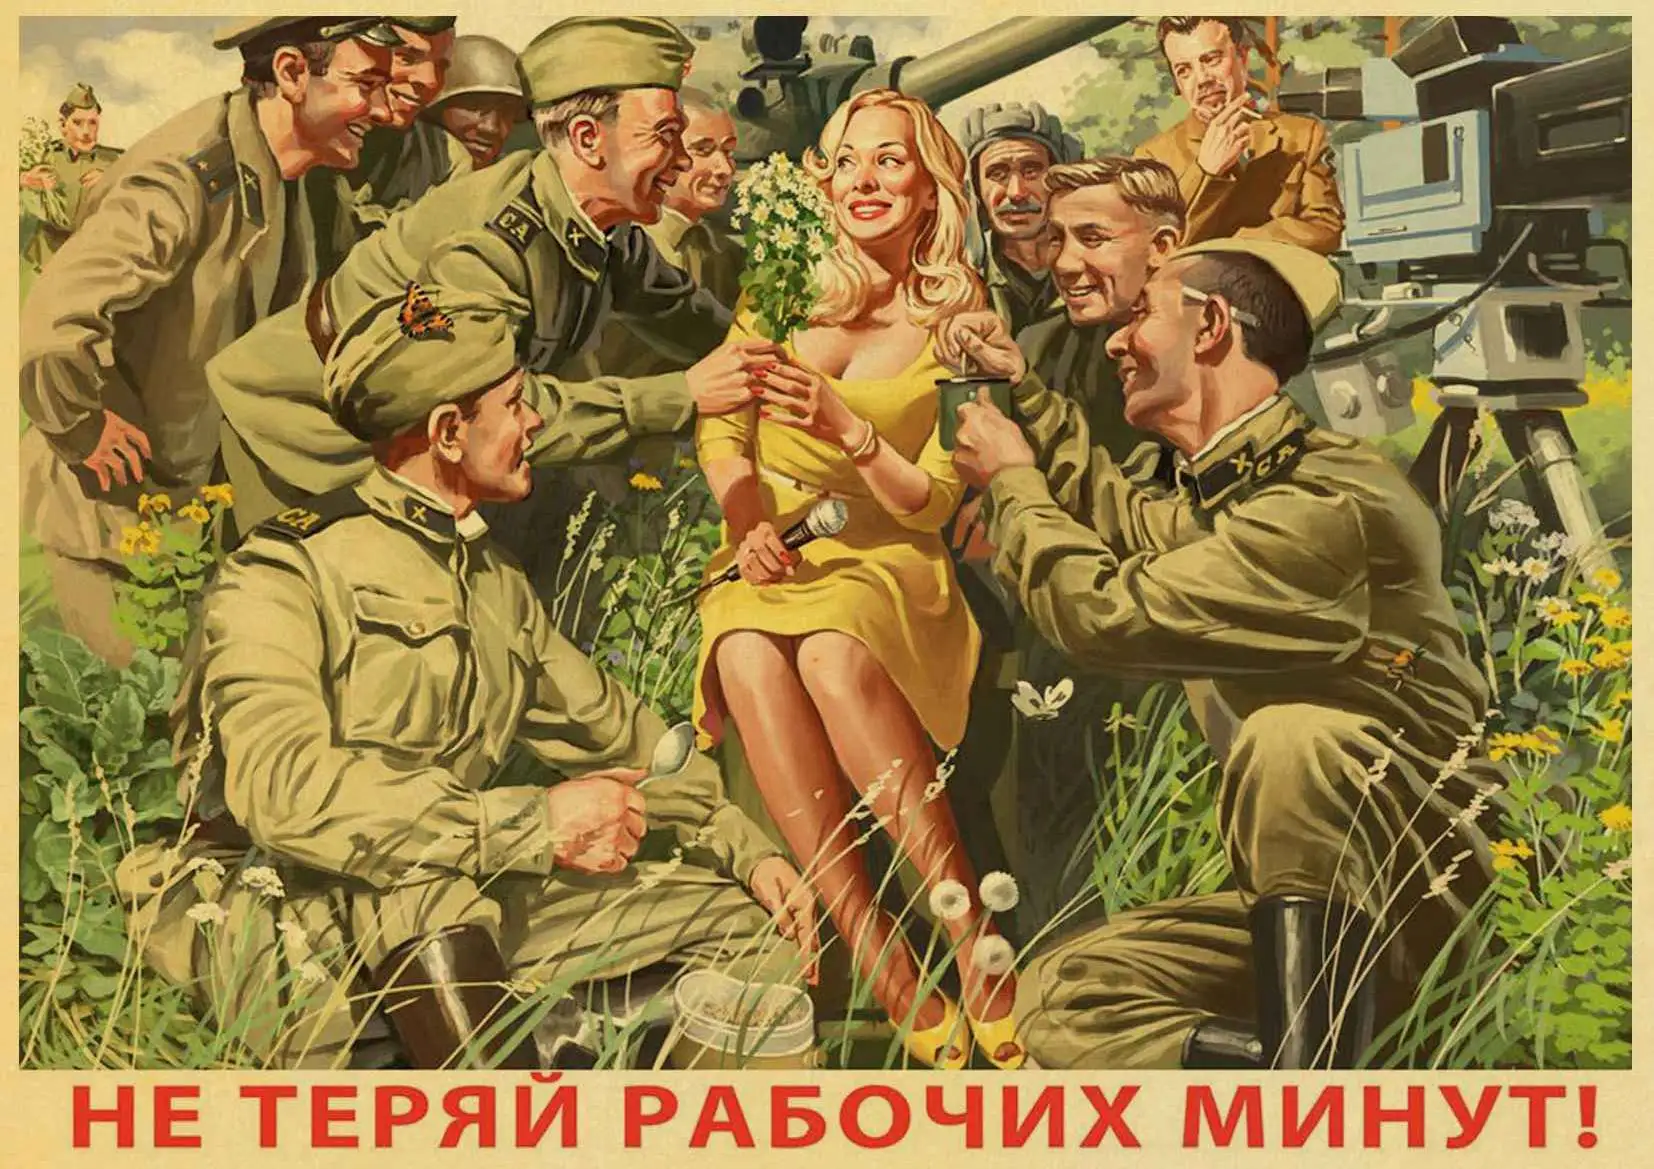 Ретро стикер на стену Сталин СССР CCCP Старый плакат персонализированные крафт-бумага плакаты декоративное искусство живопись - Цвет: E118